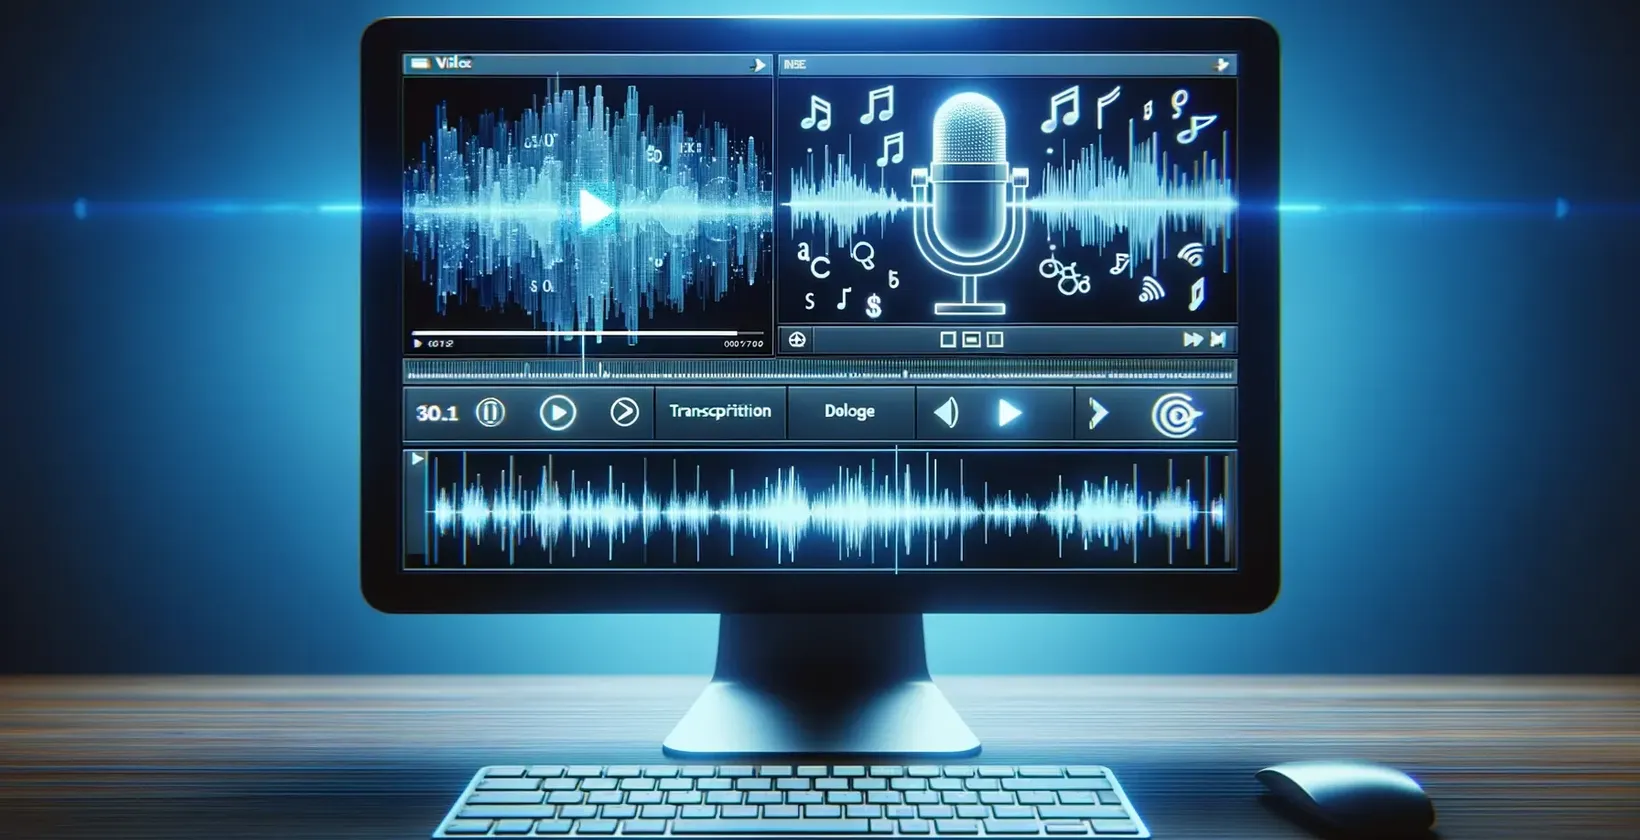 En computerskærm med musiknoter og en mikrofon, der bruges til at transskribere video til tekst.